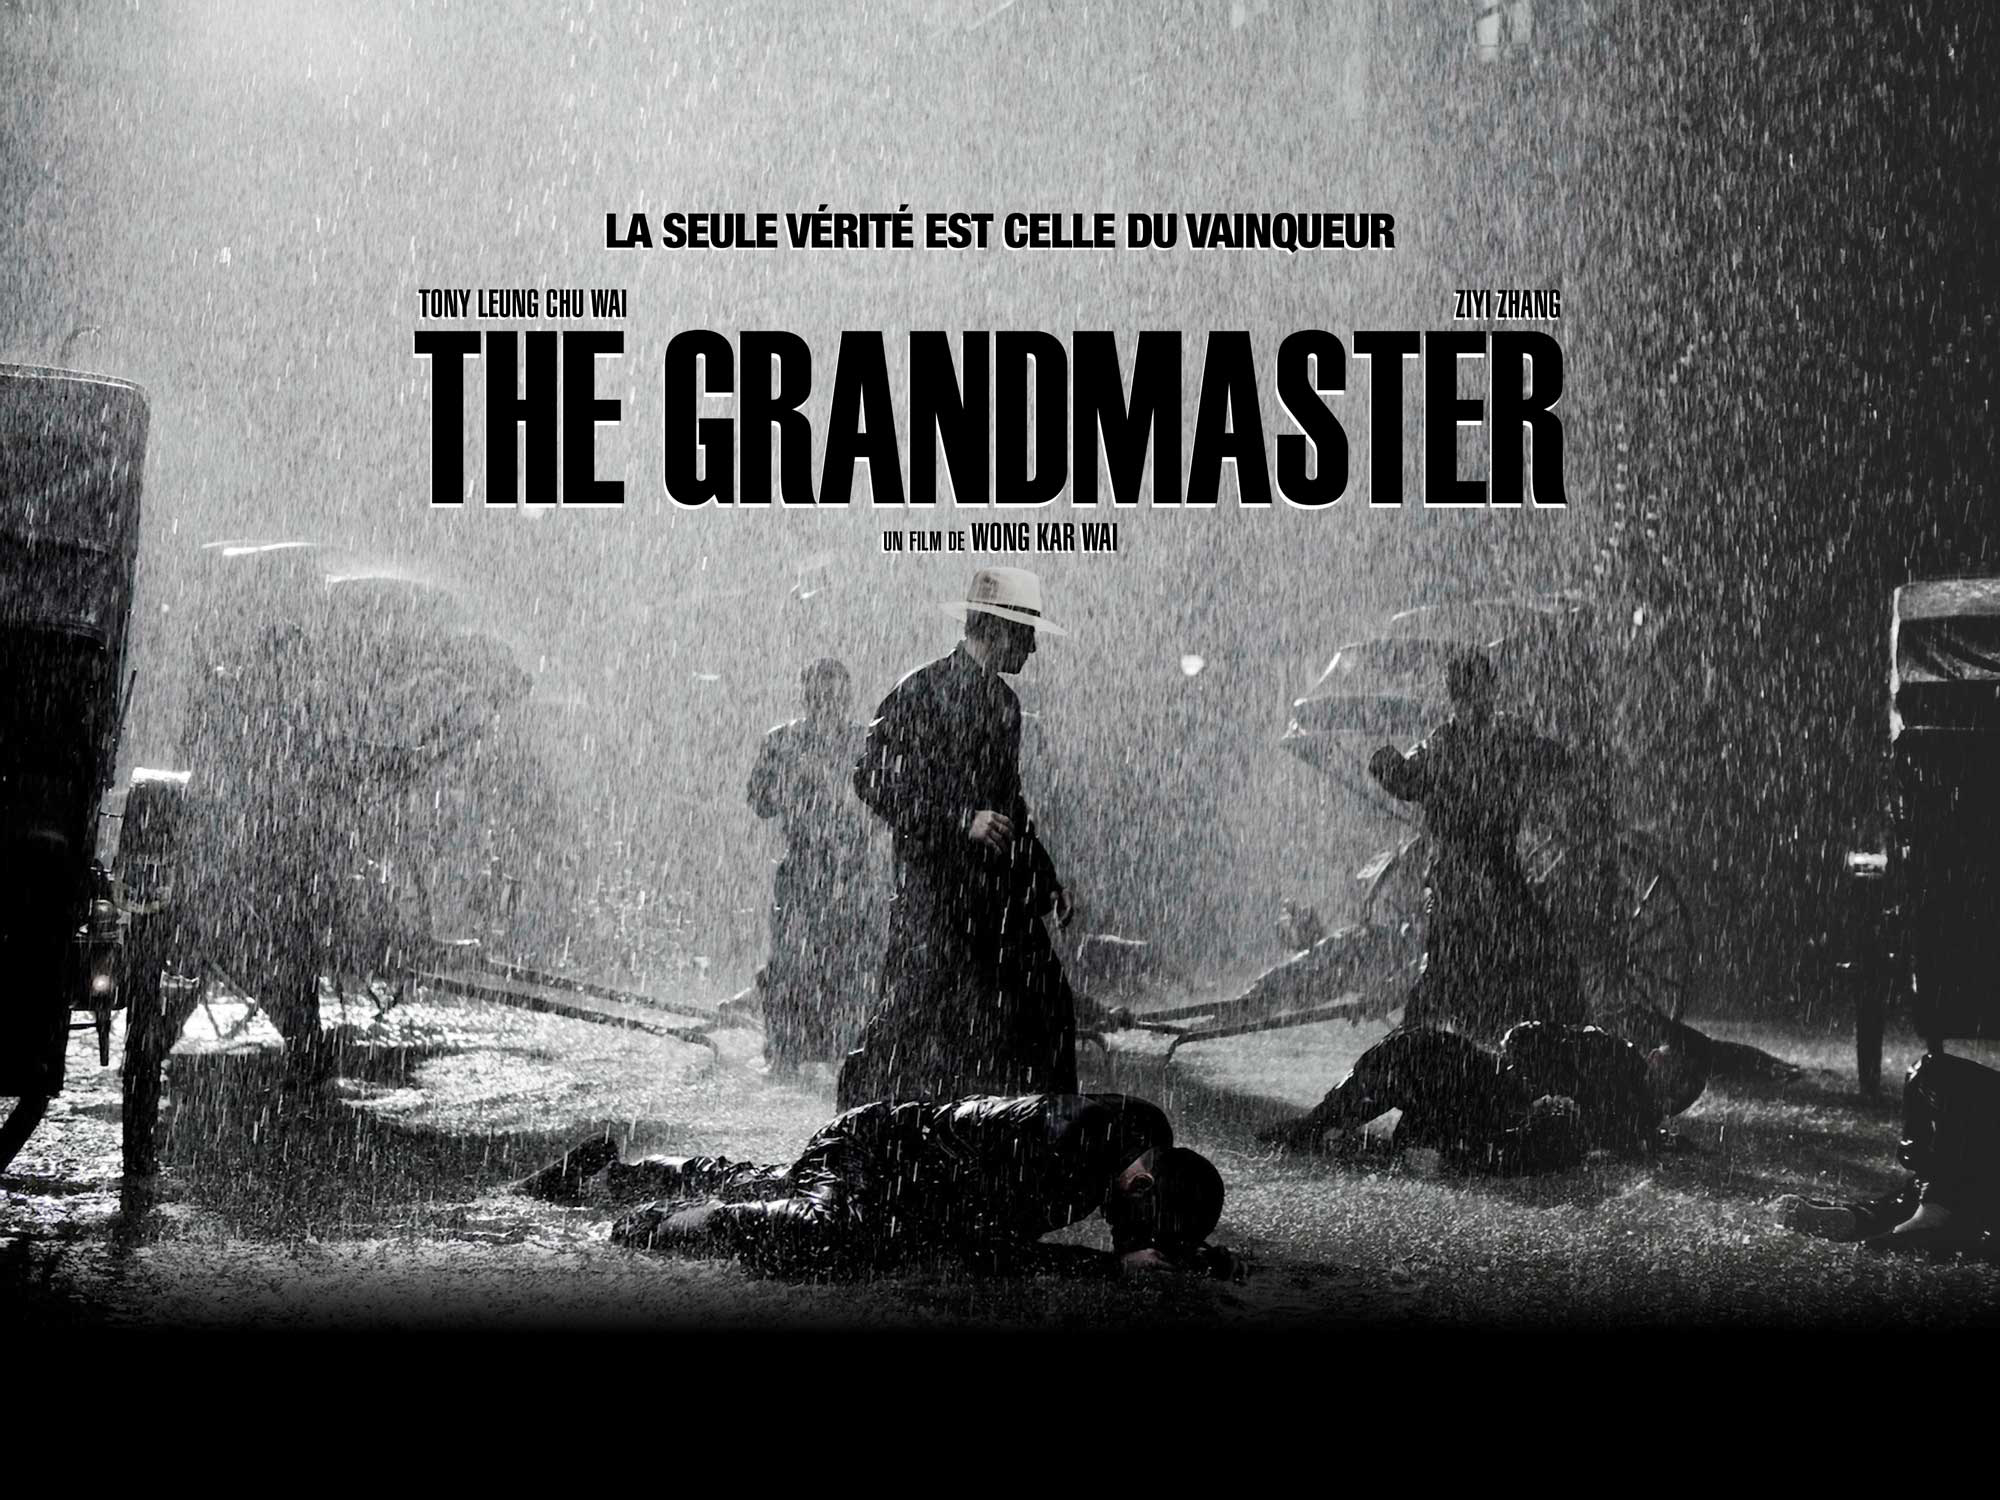 http://www.nowhereelse.fr/wp-content/uploads/2013/02/poster-the-grandmaster.jpg